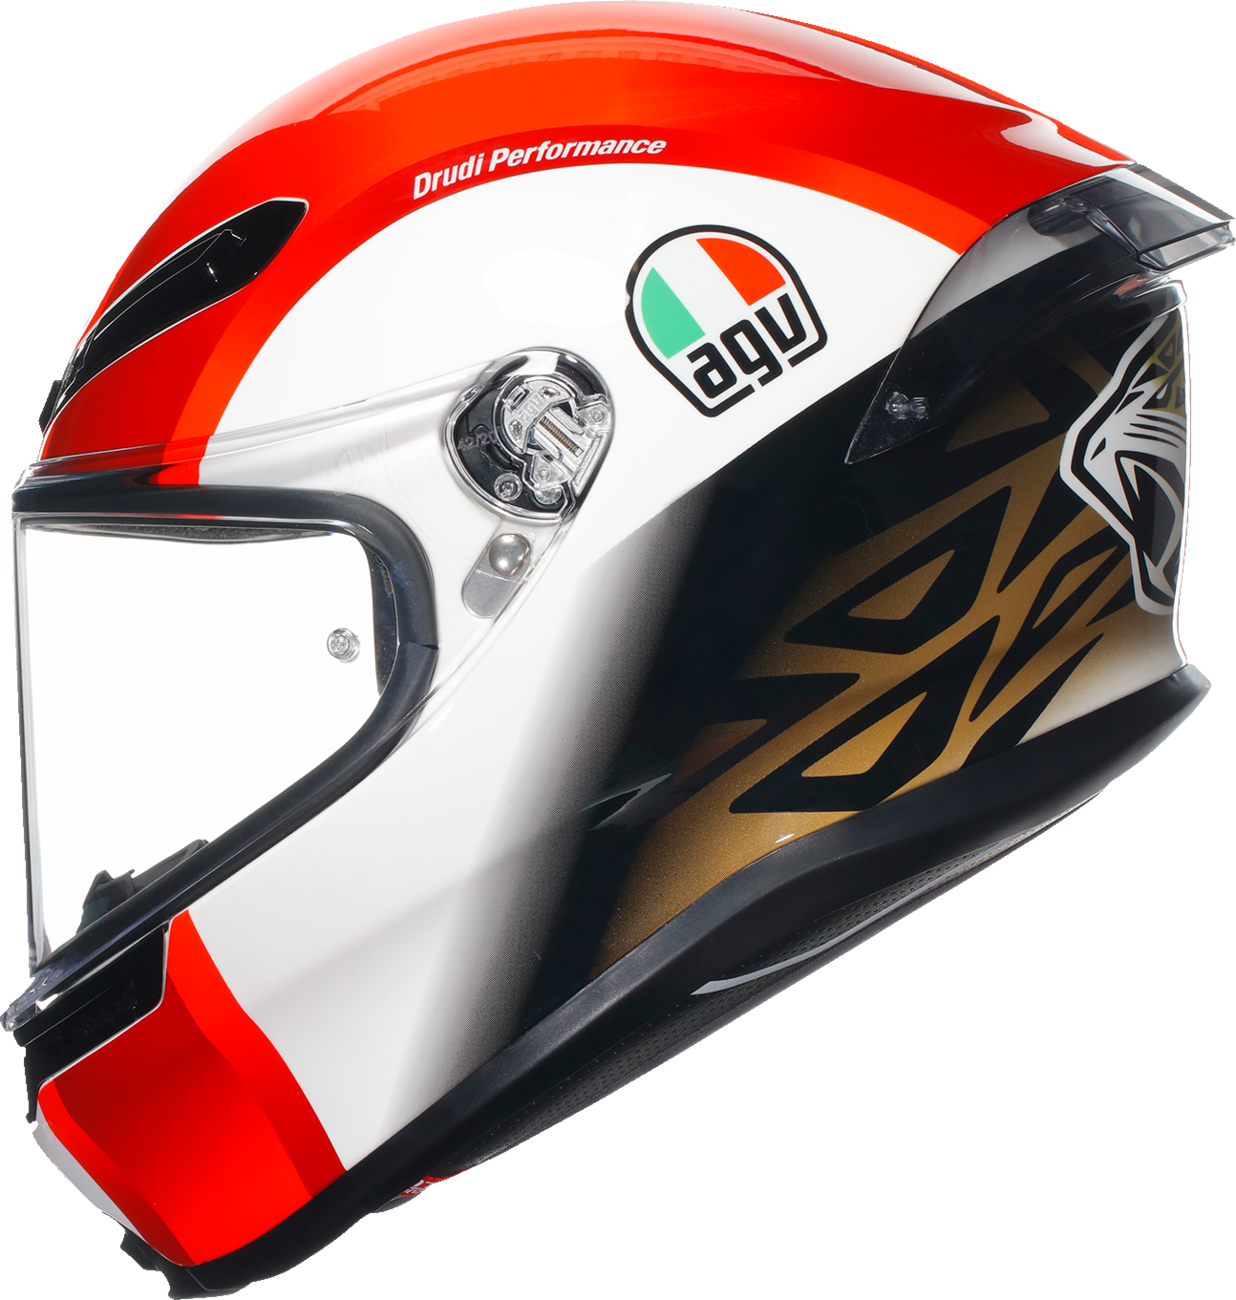 AGV K6 S Helmet - Sic58 - Medium 2118395002004M